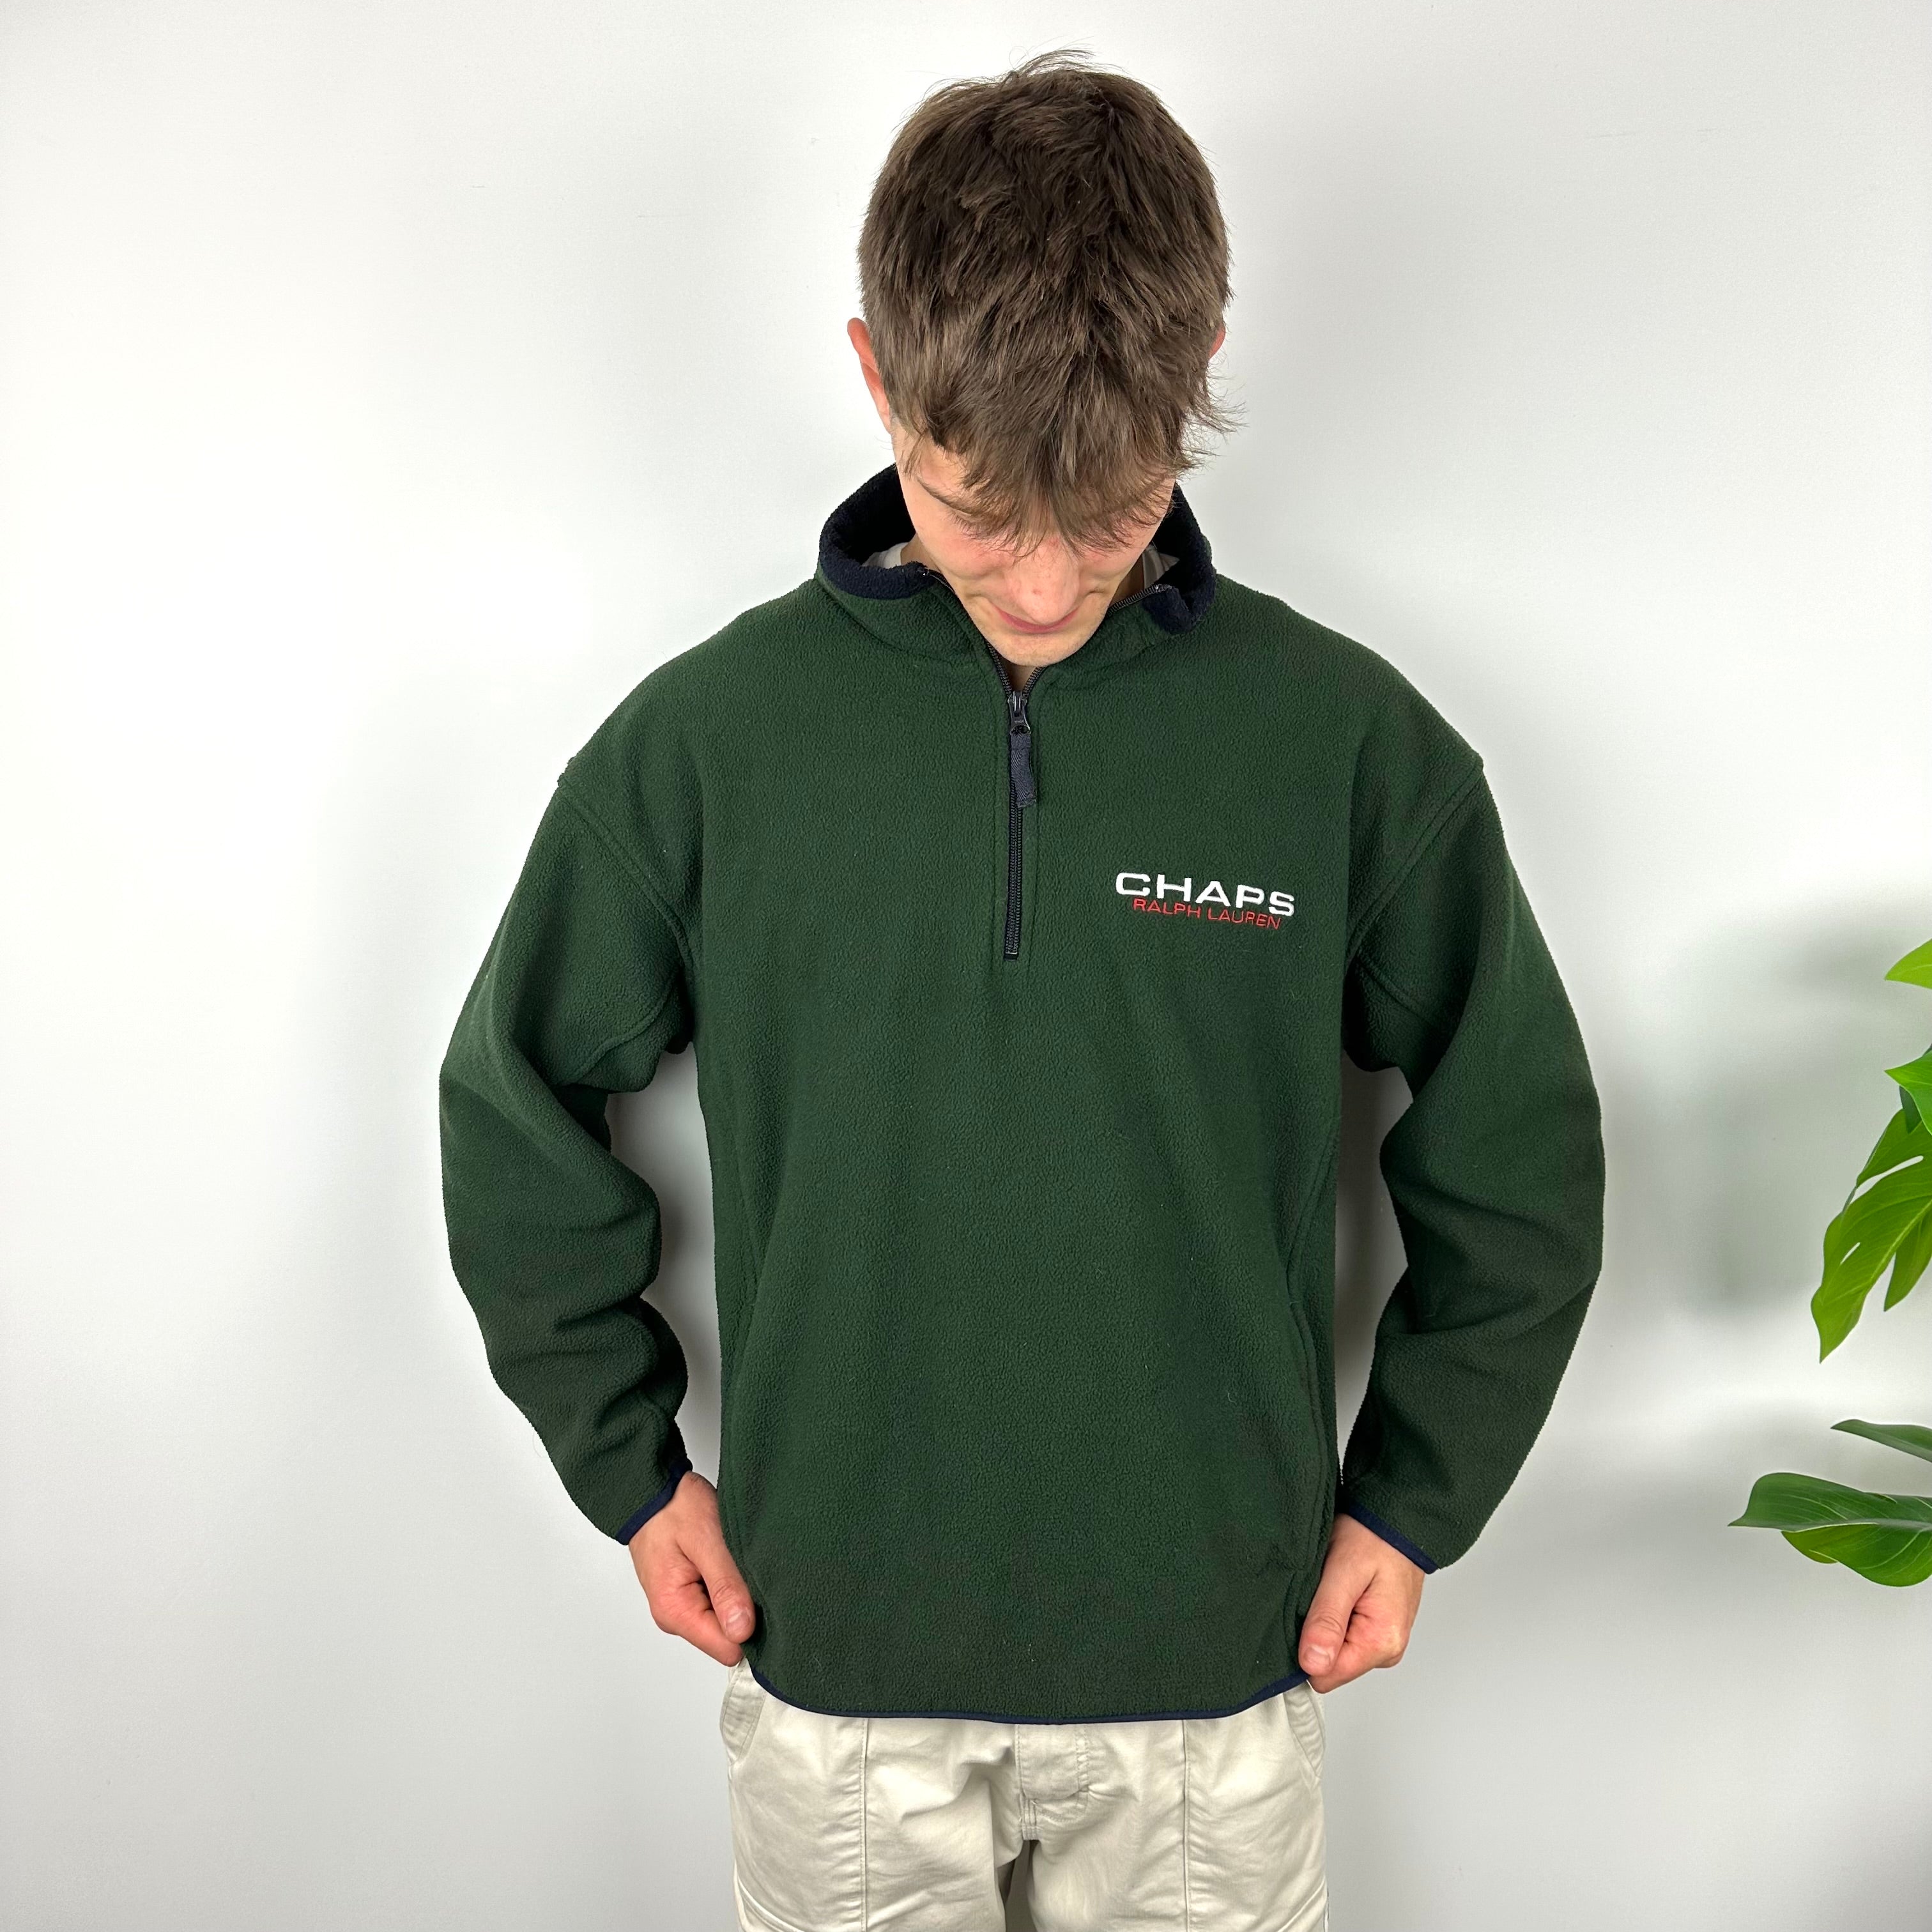 Chaps Ralph Lauren Green Embroidered Spell Out Teddy Bear Fleece Quarter Zip Sweatshirt (L)